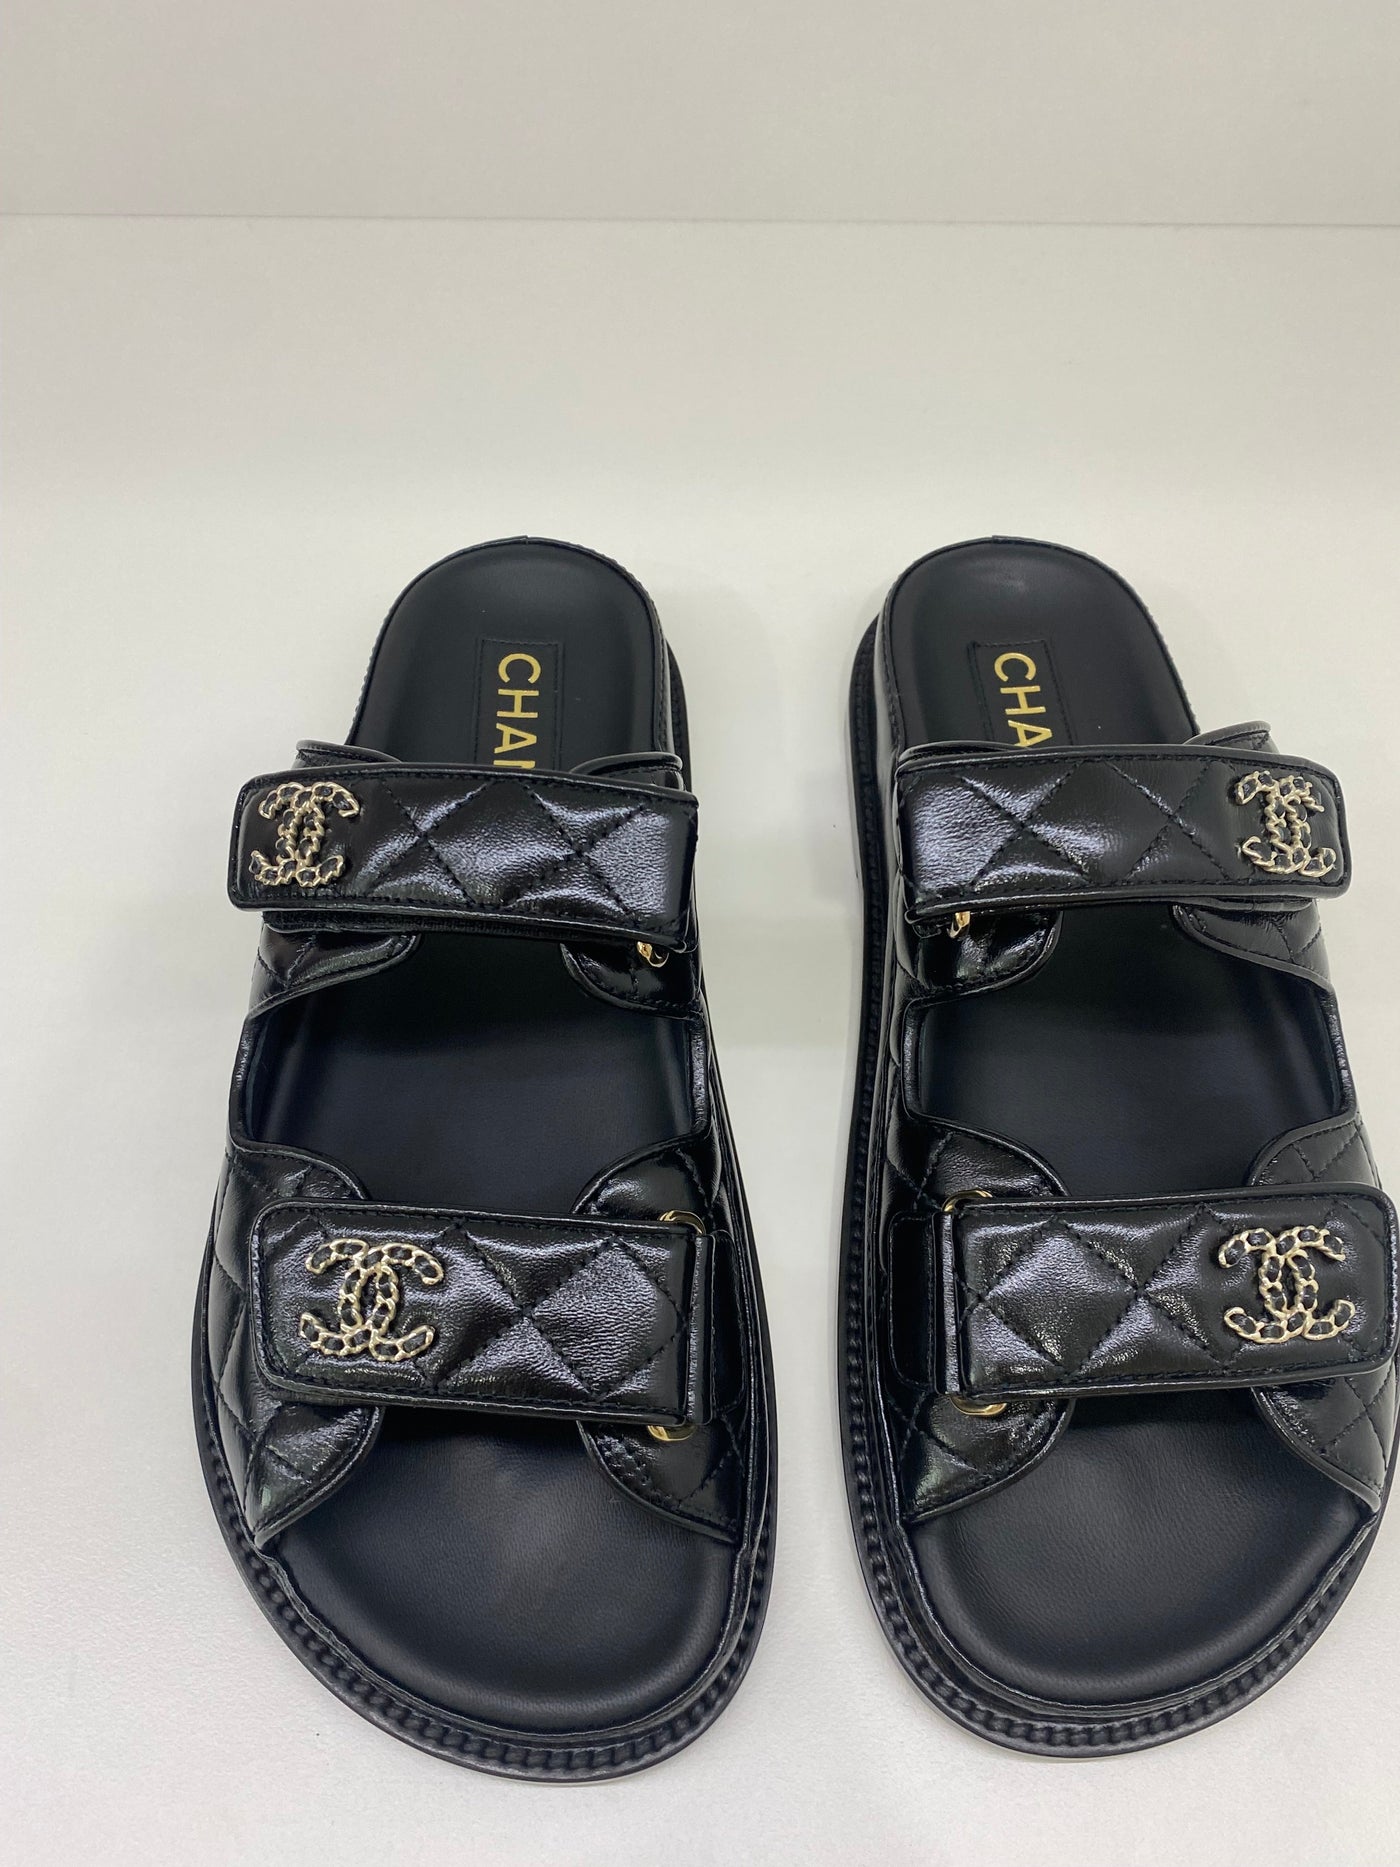 Copy of Chanel Dad Sandal Slide Black - Size 35